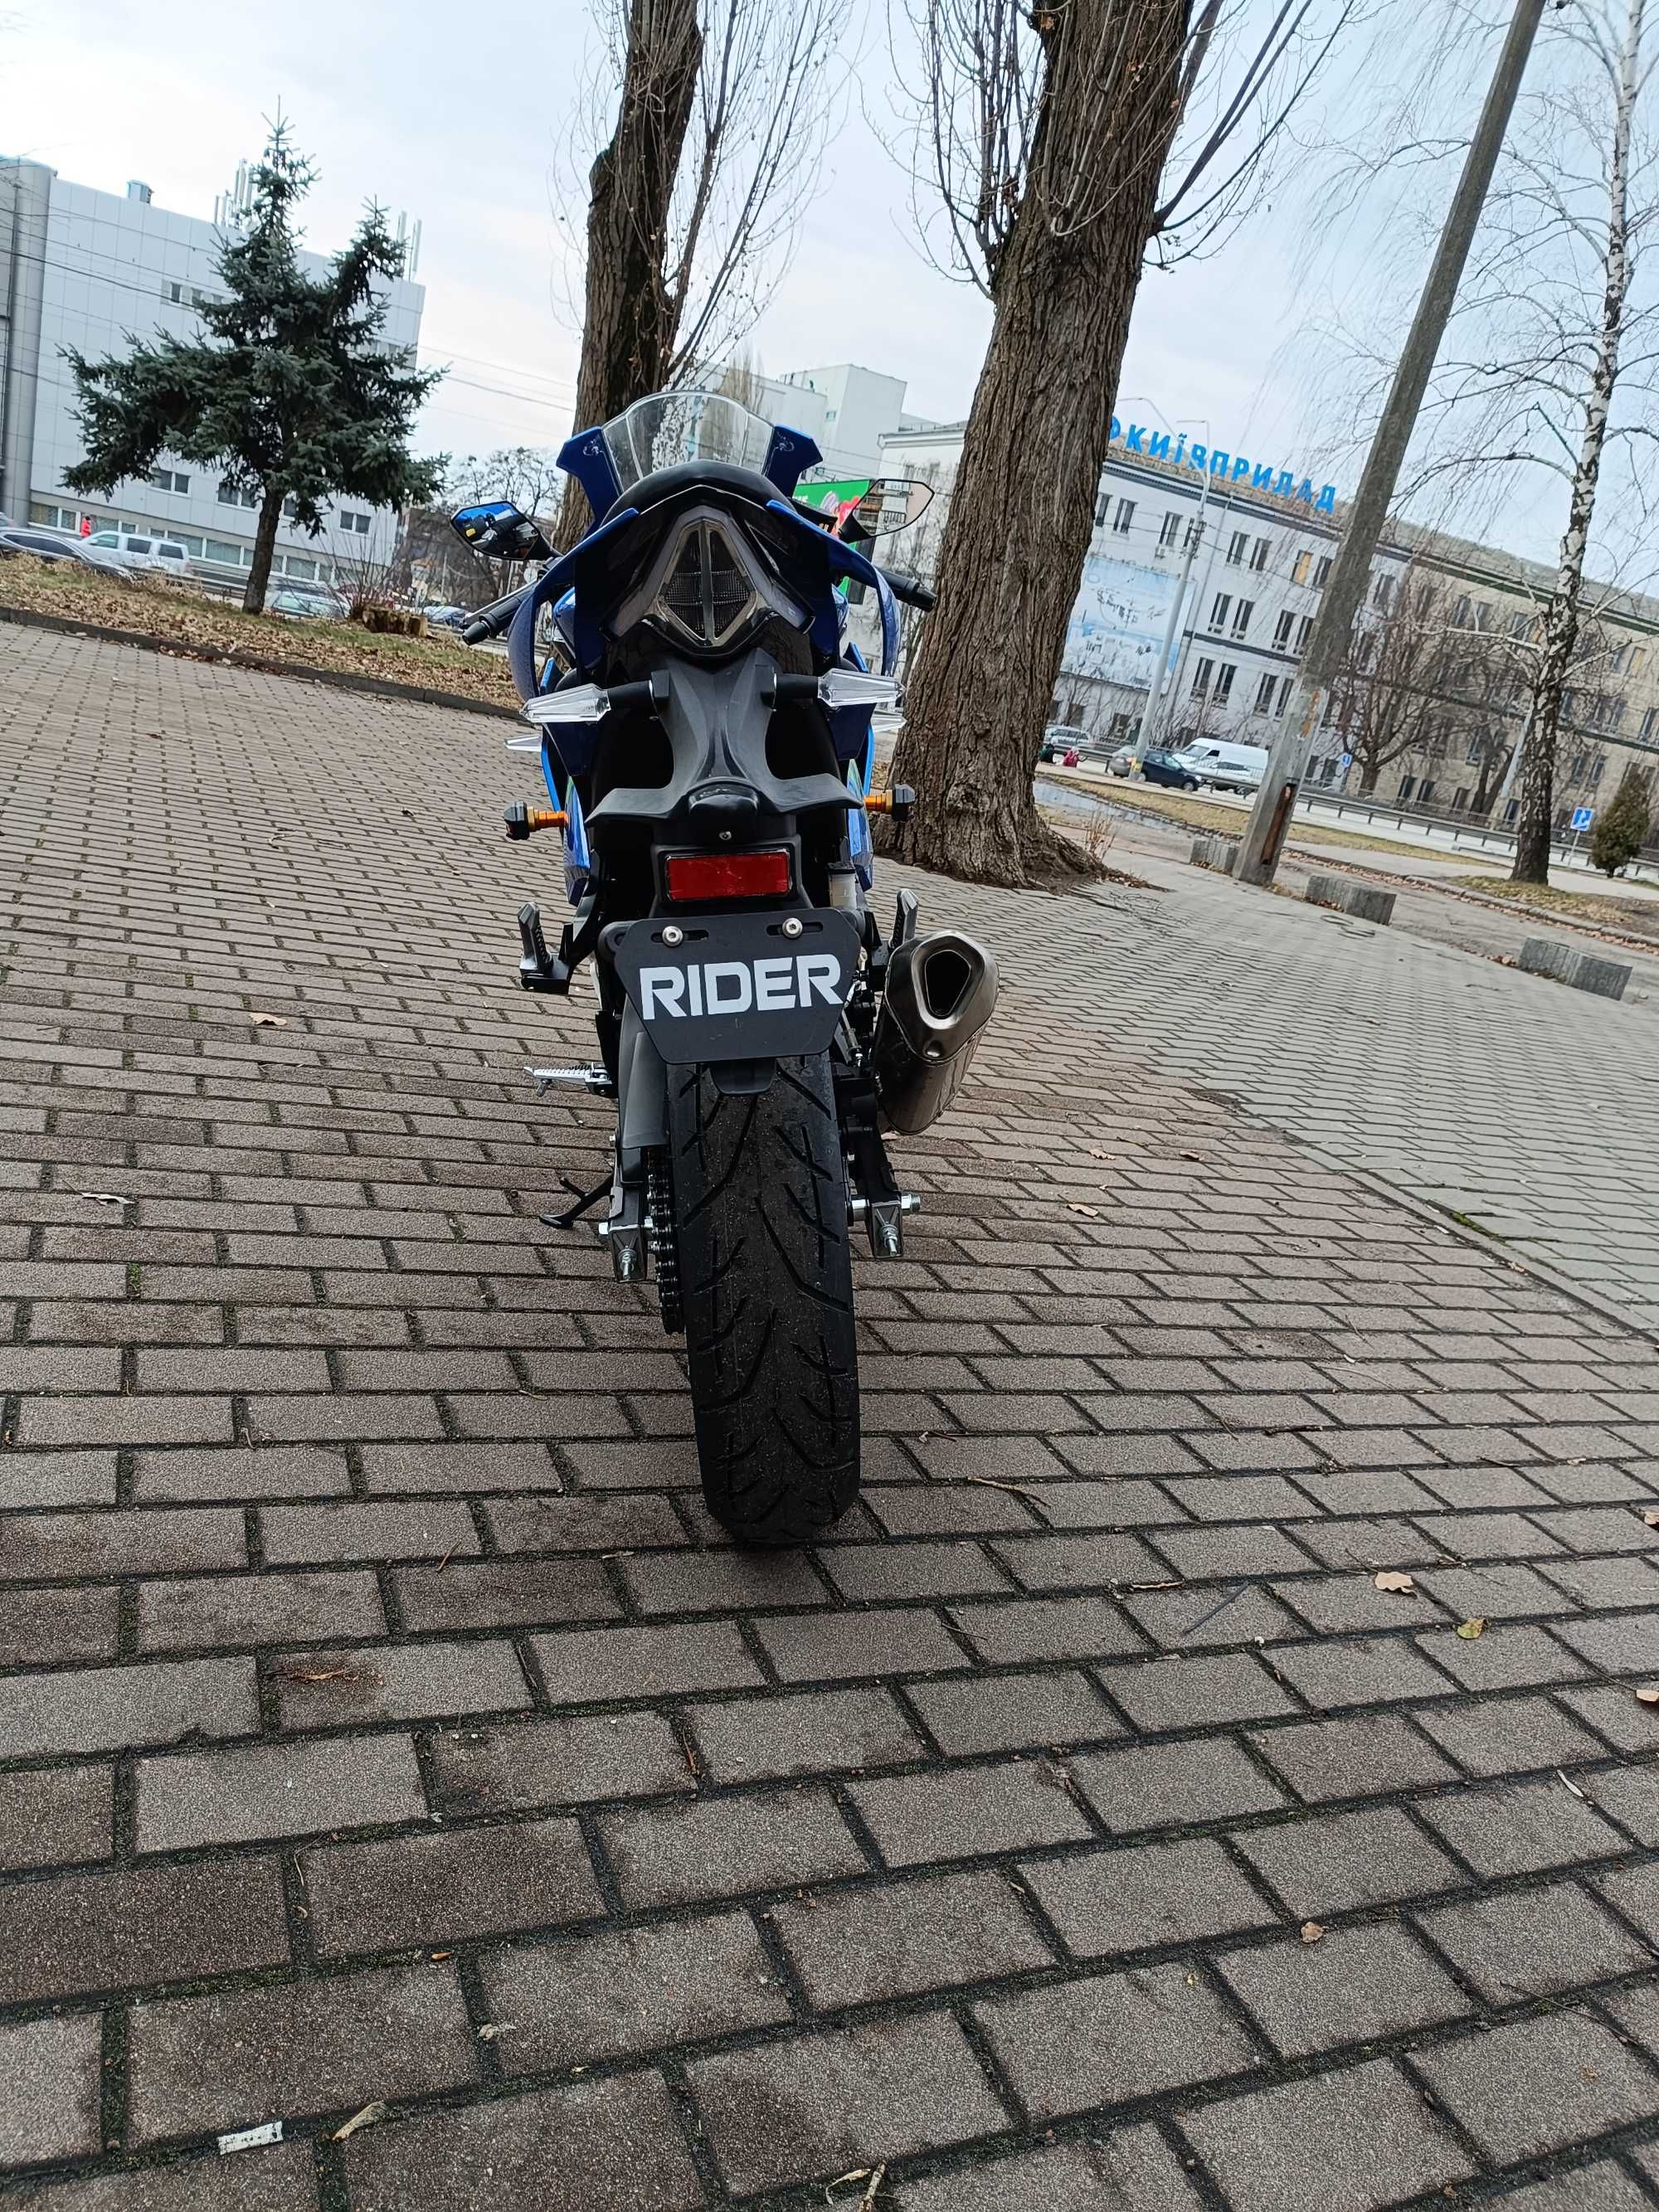 мотоцикл спорт RIDER R1M 250CC не Zongshe Доставка/Кредит/Гаратнія